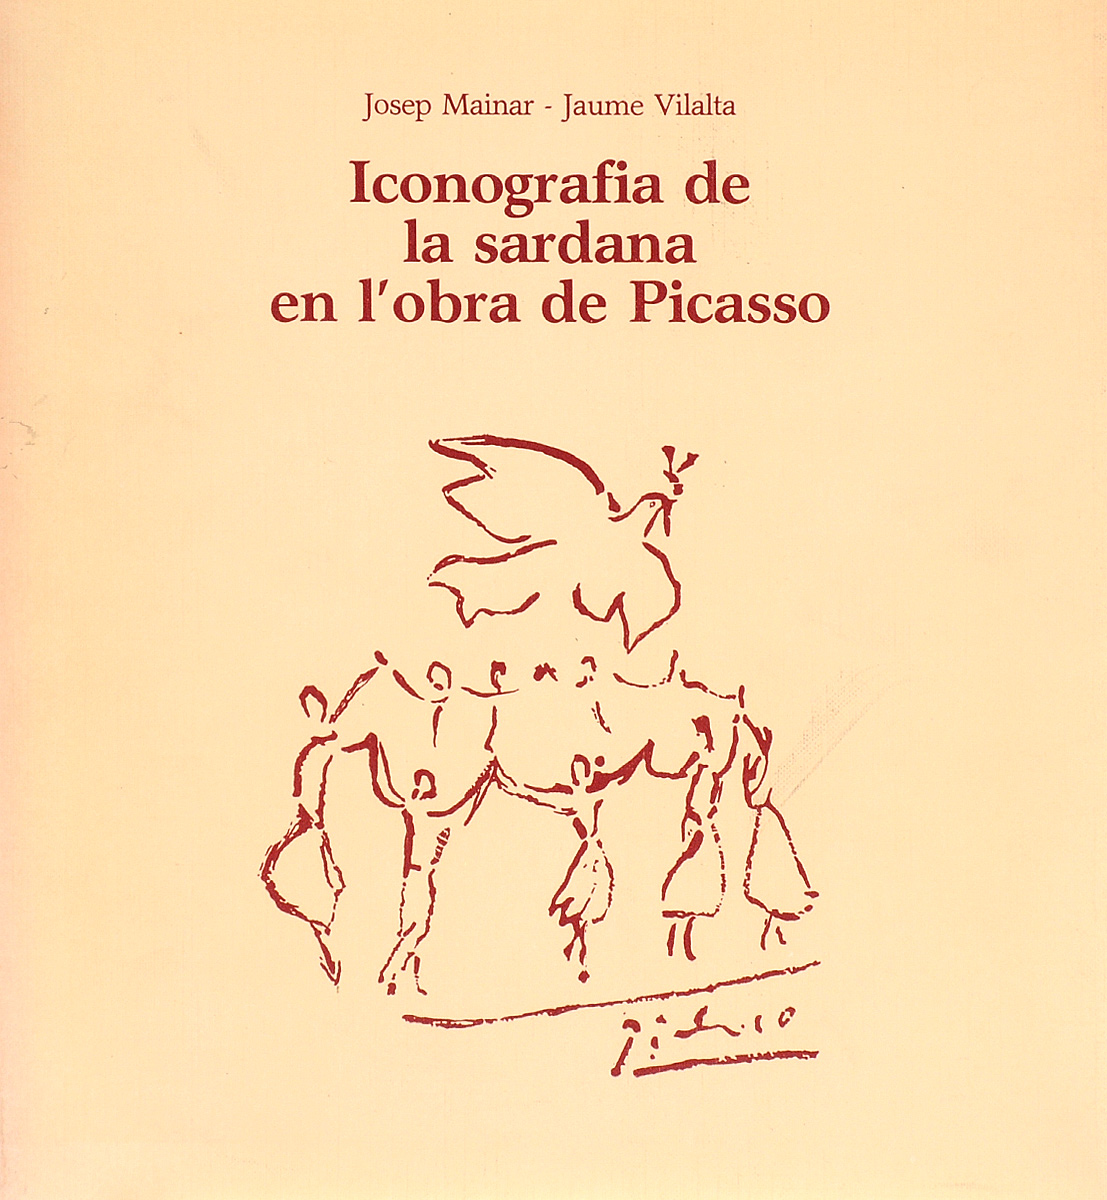 Iconografia de la sardana en l'obra de Picasso